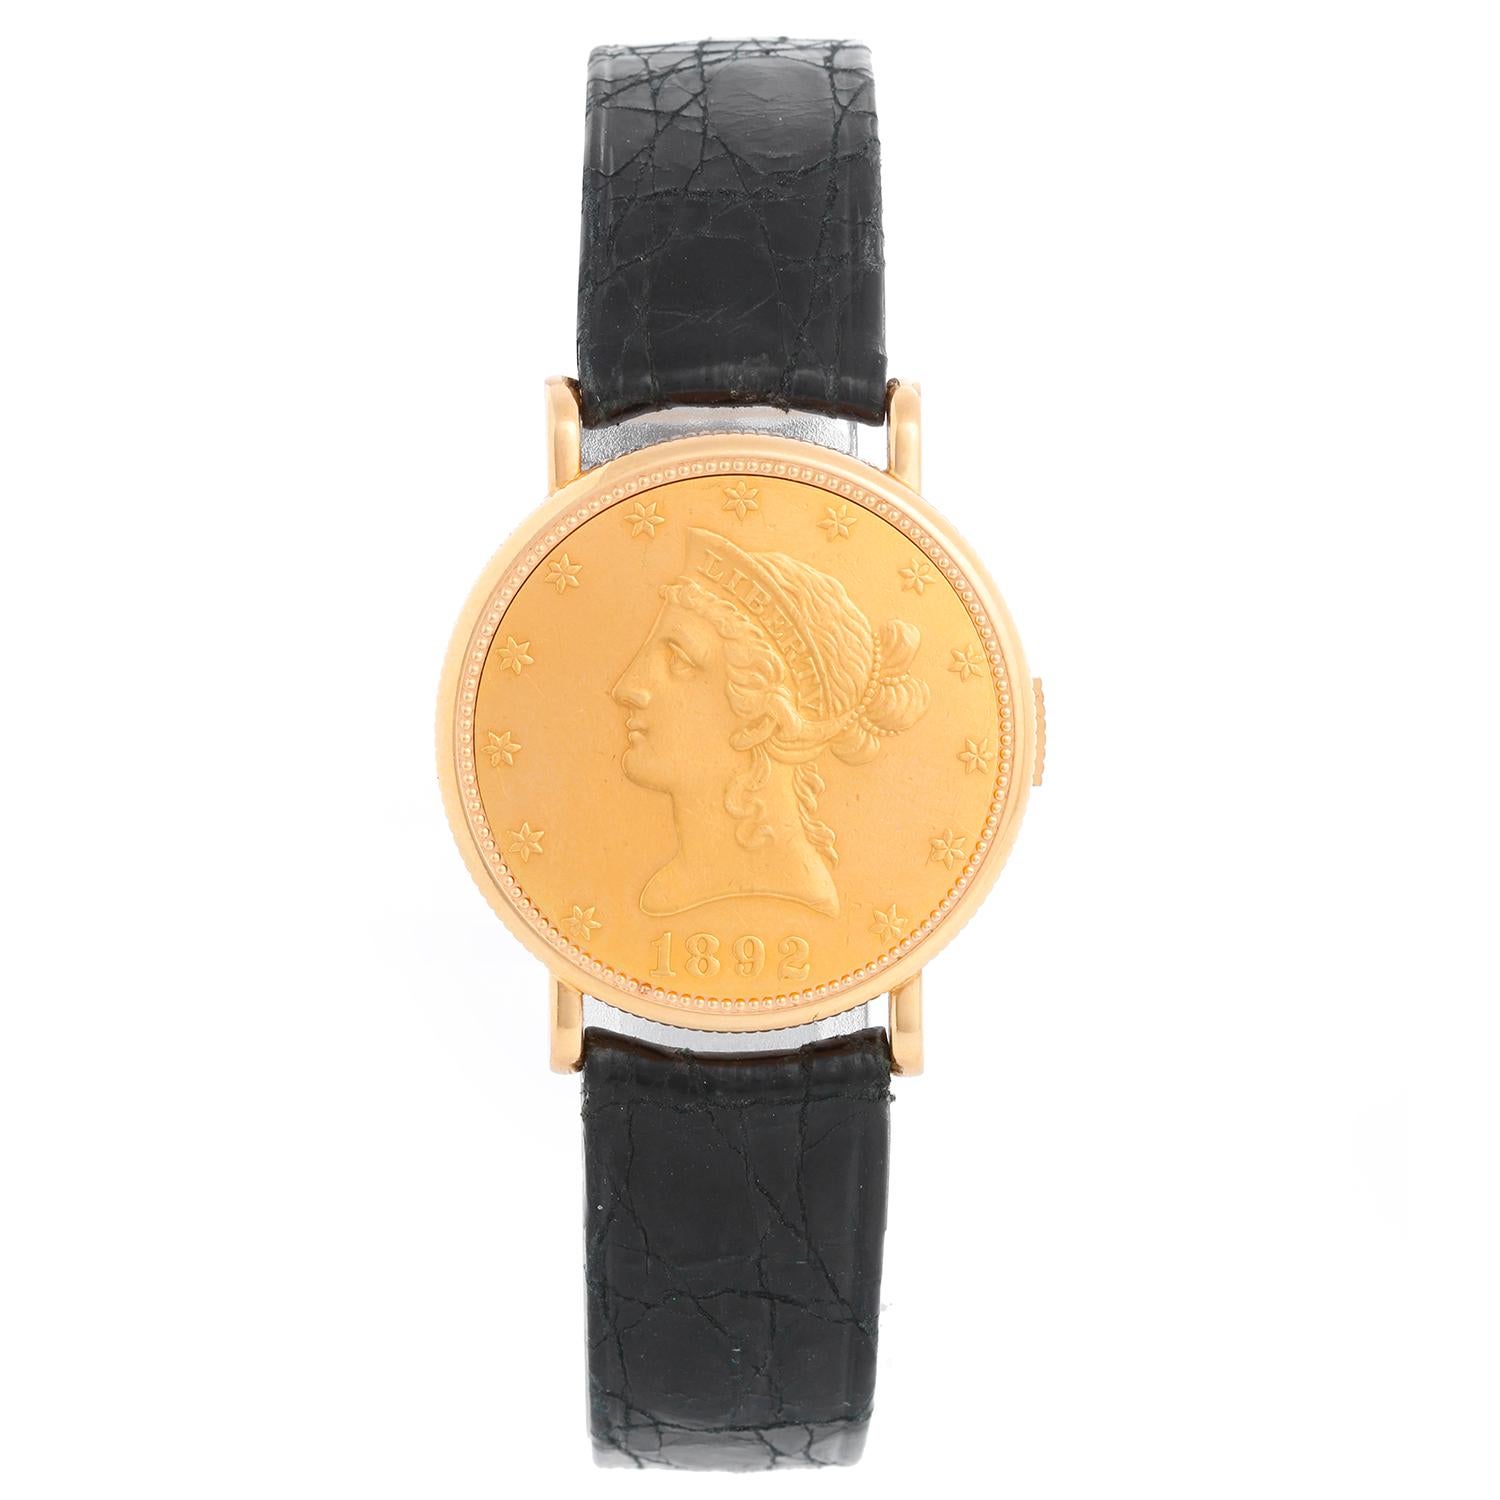 Piaget Coin Collection 18k Gelbgold Uhr - Handaufzug. 18K Gelbgold (28 mm) mit glatter Lünette. Rosa Zifferblatt mit Strichindizes. Piaget Armband mit Goldschließe... Pre-owned mit benutzerdefinierten Box. 